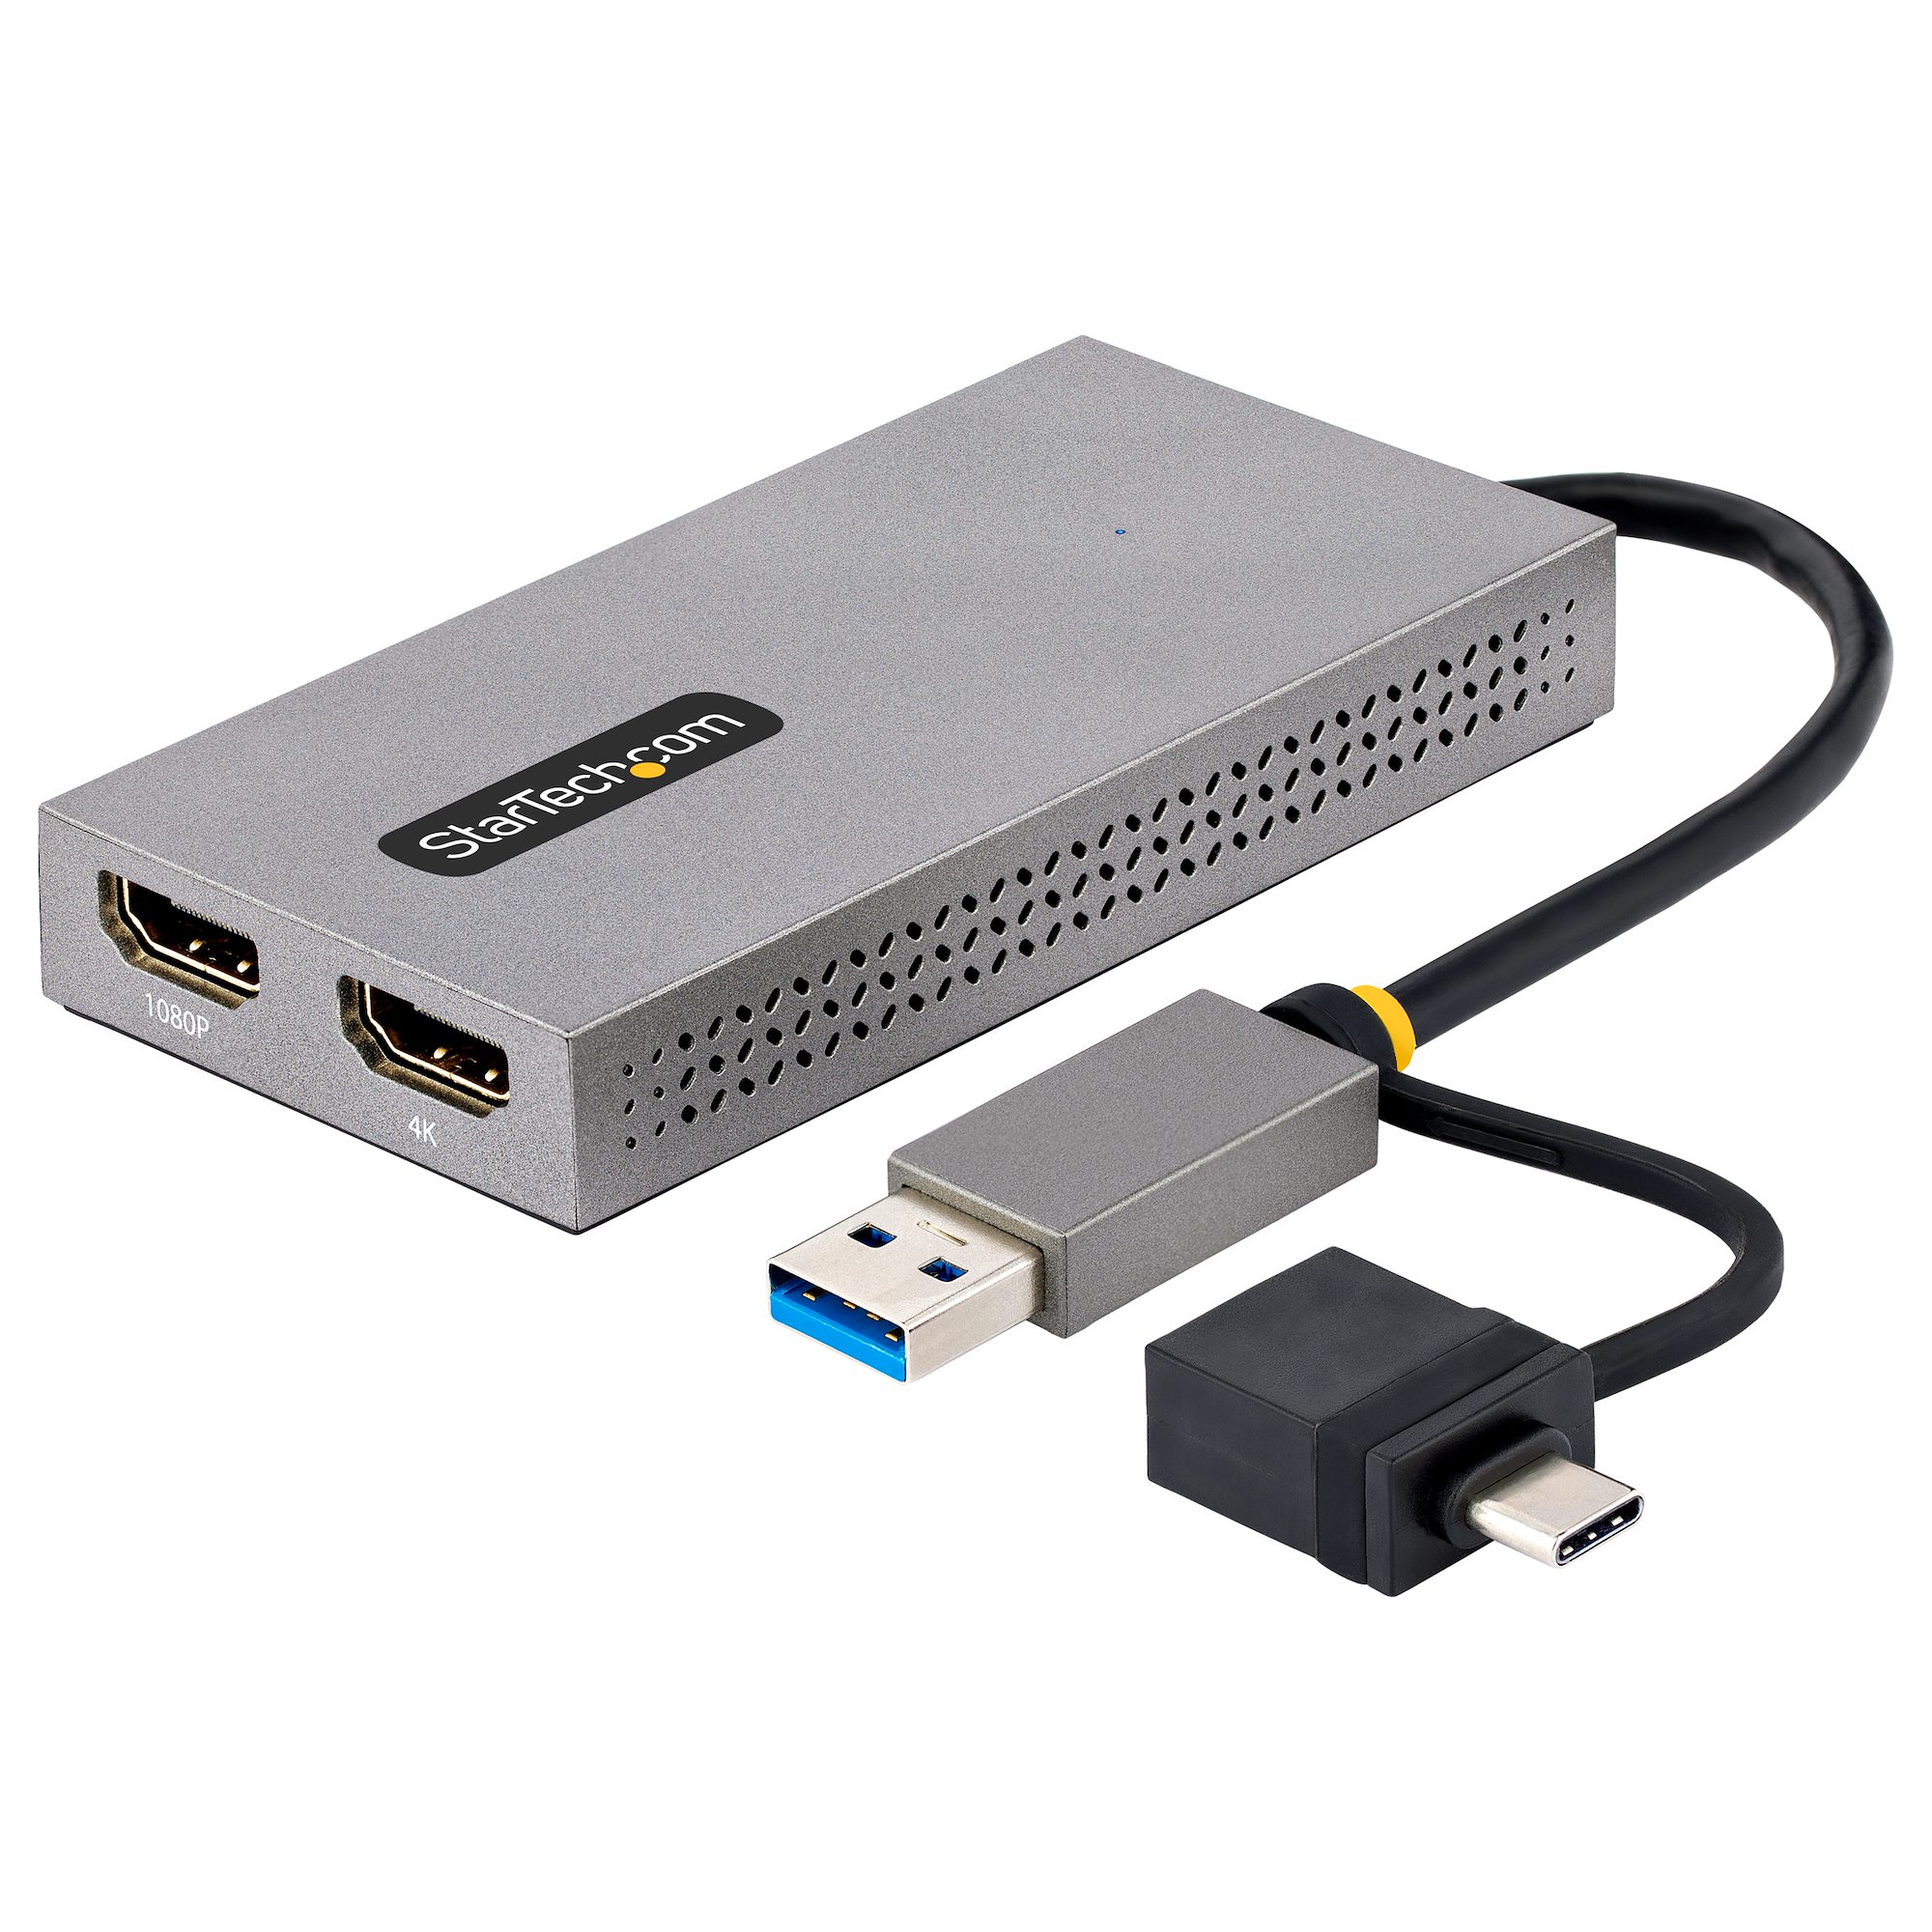 【107B-USB-HDMI】USB TO DUAL HDMI ADAPTER, USB A/